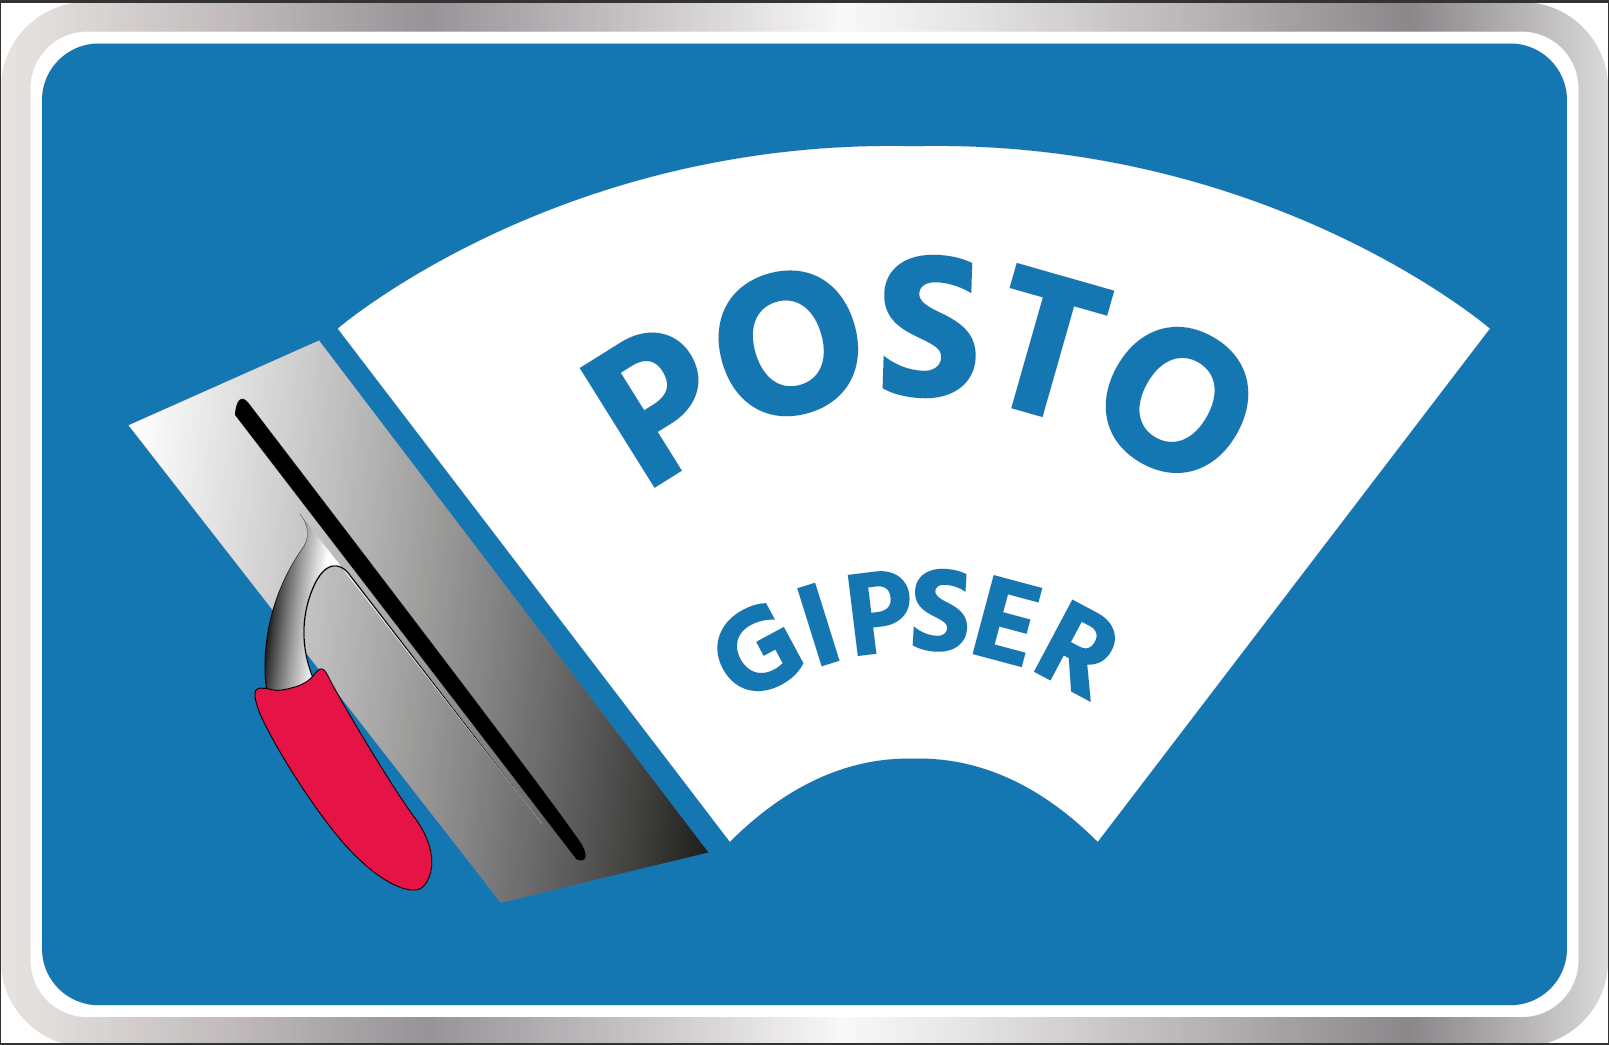 Posto-Gipser GmbH